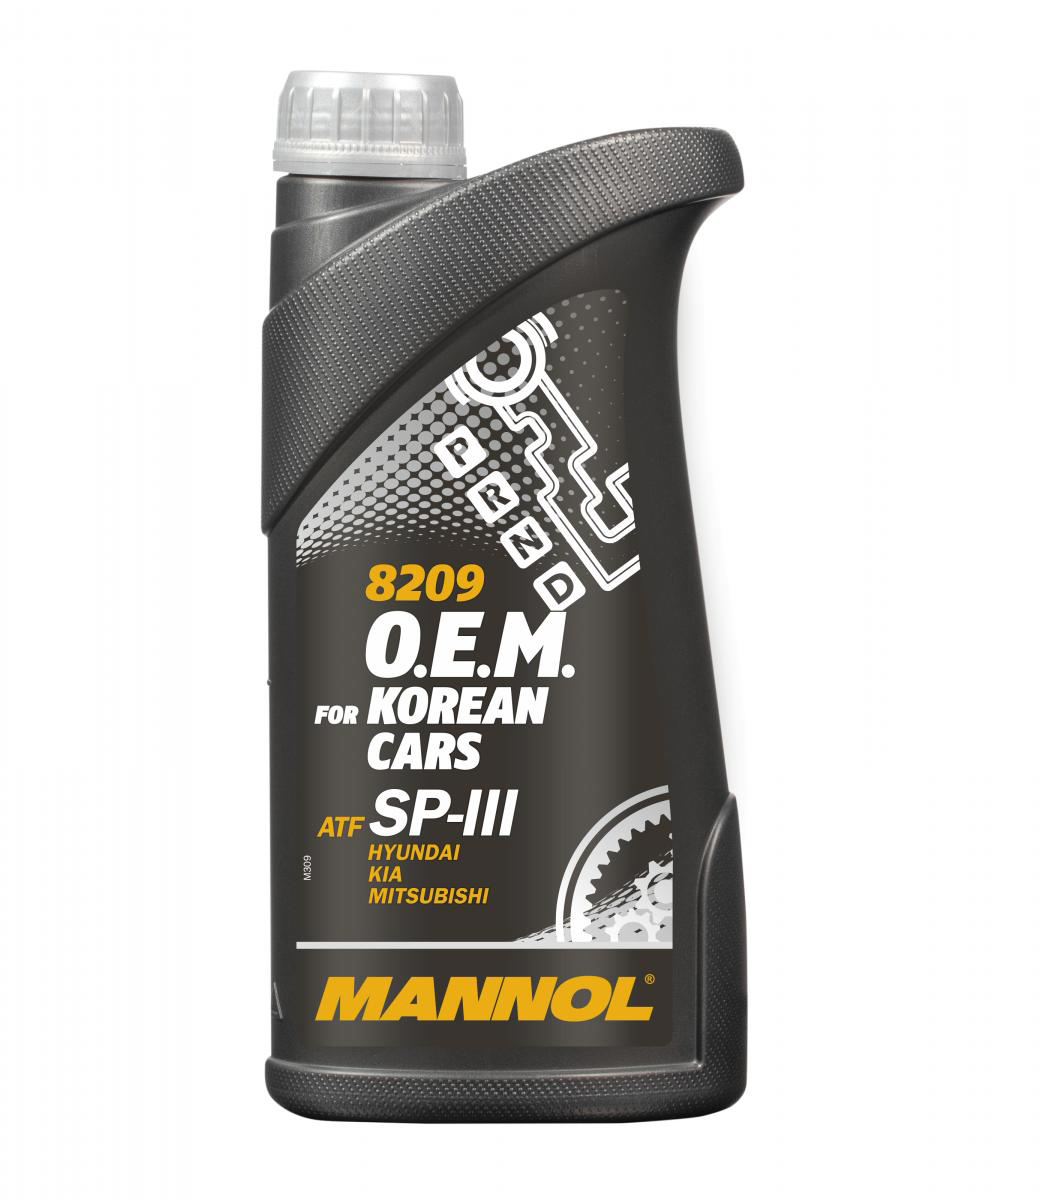 O.E.M. for Korean Cars